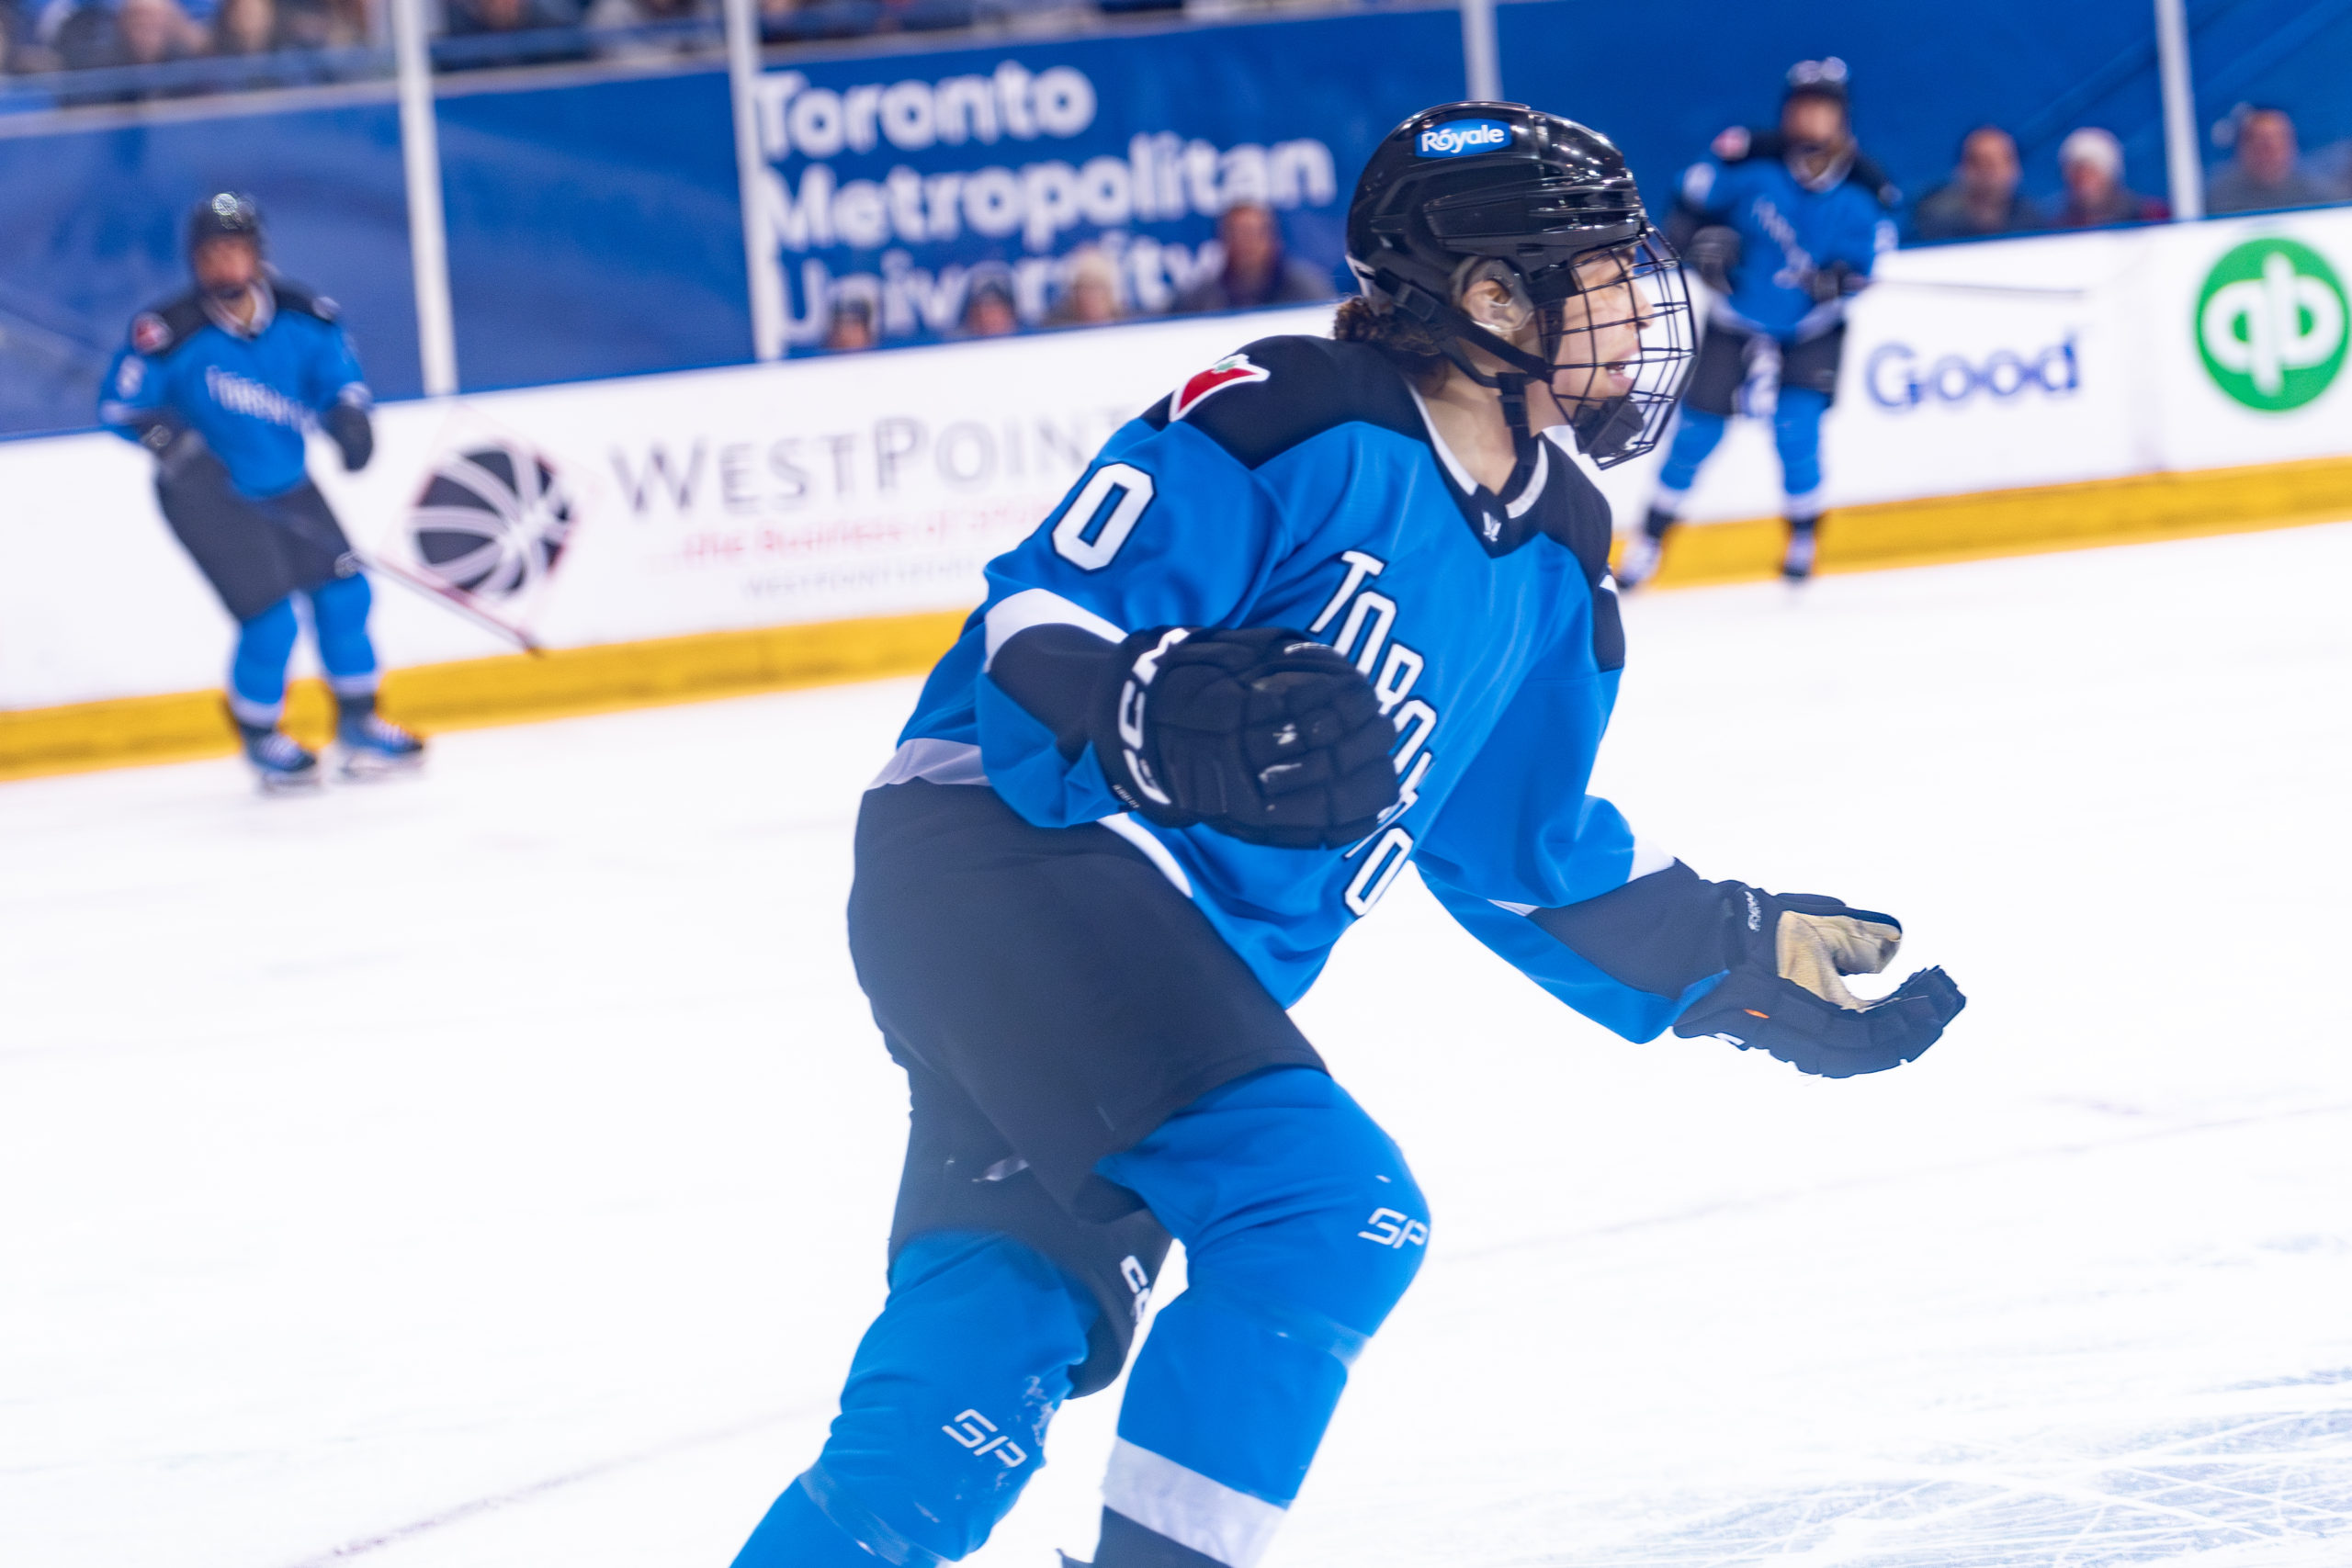 PWHL Toronto player Sarah Nurse skates with hands raised